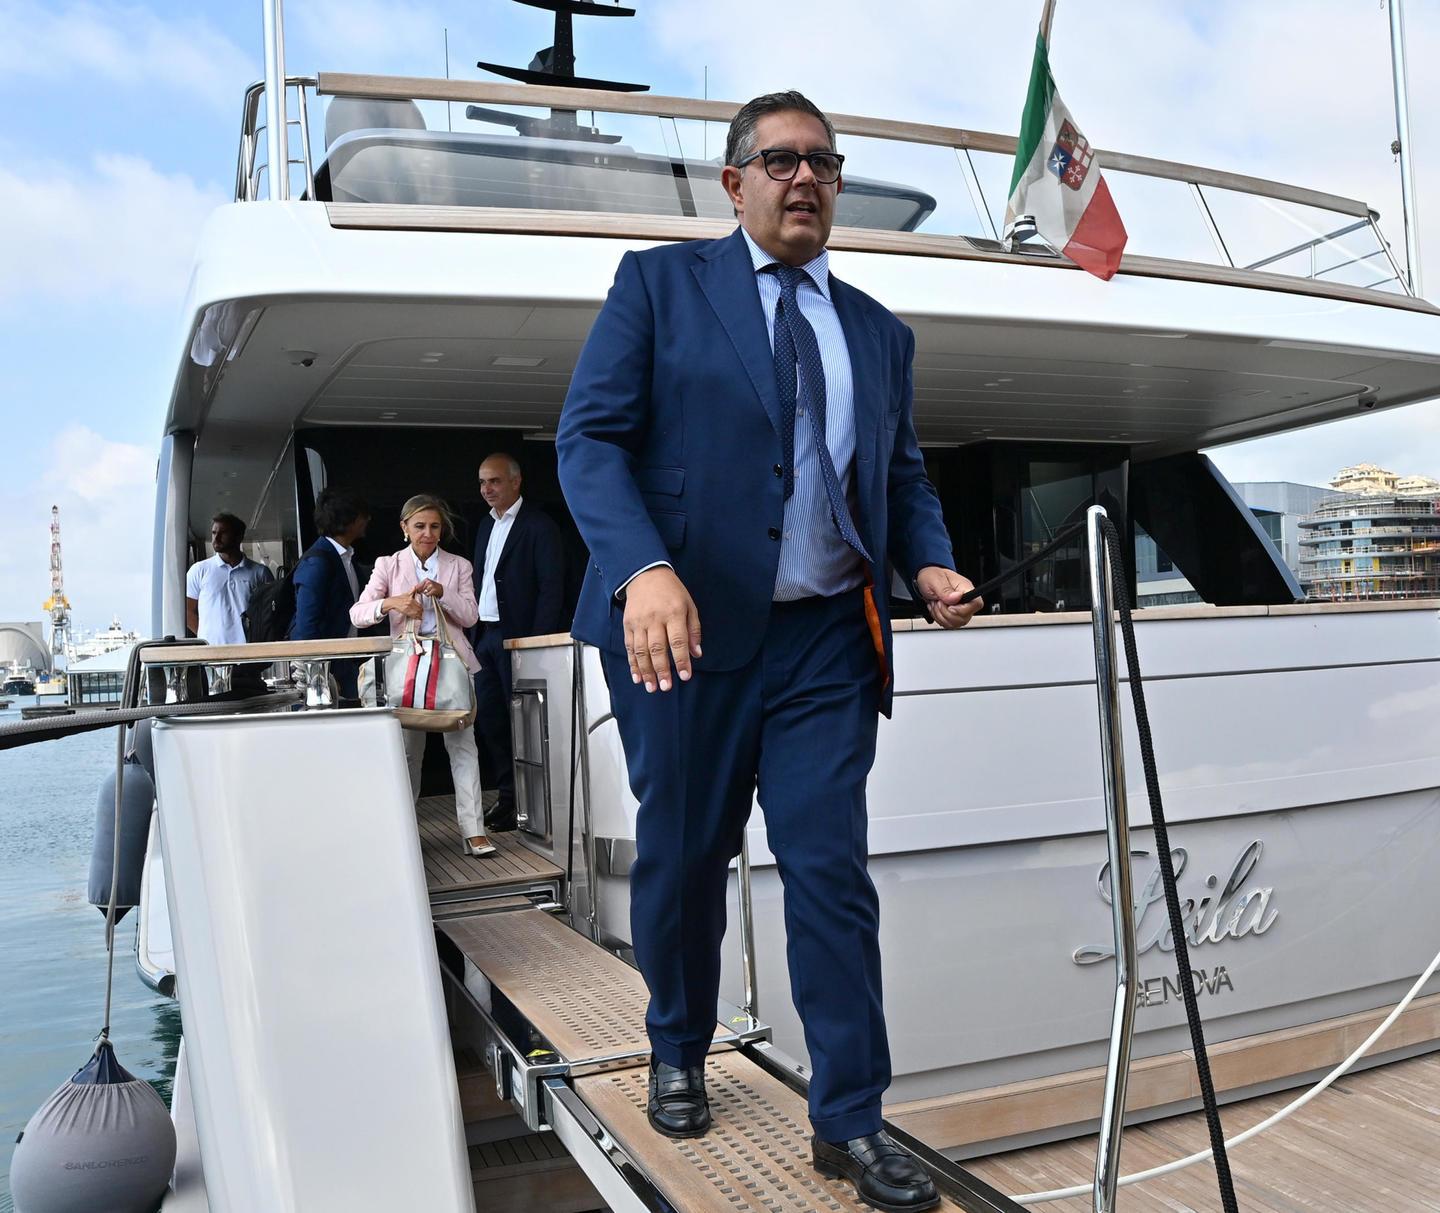 Gli incontri sullo yacht di Spinelli con Toti e Signorini (senza cellulari), a casa dell’imprenditore trovati ...